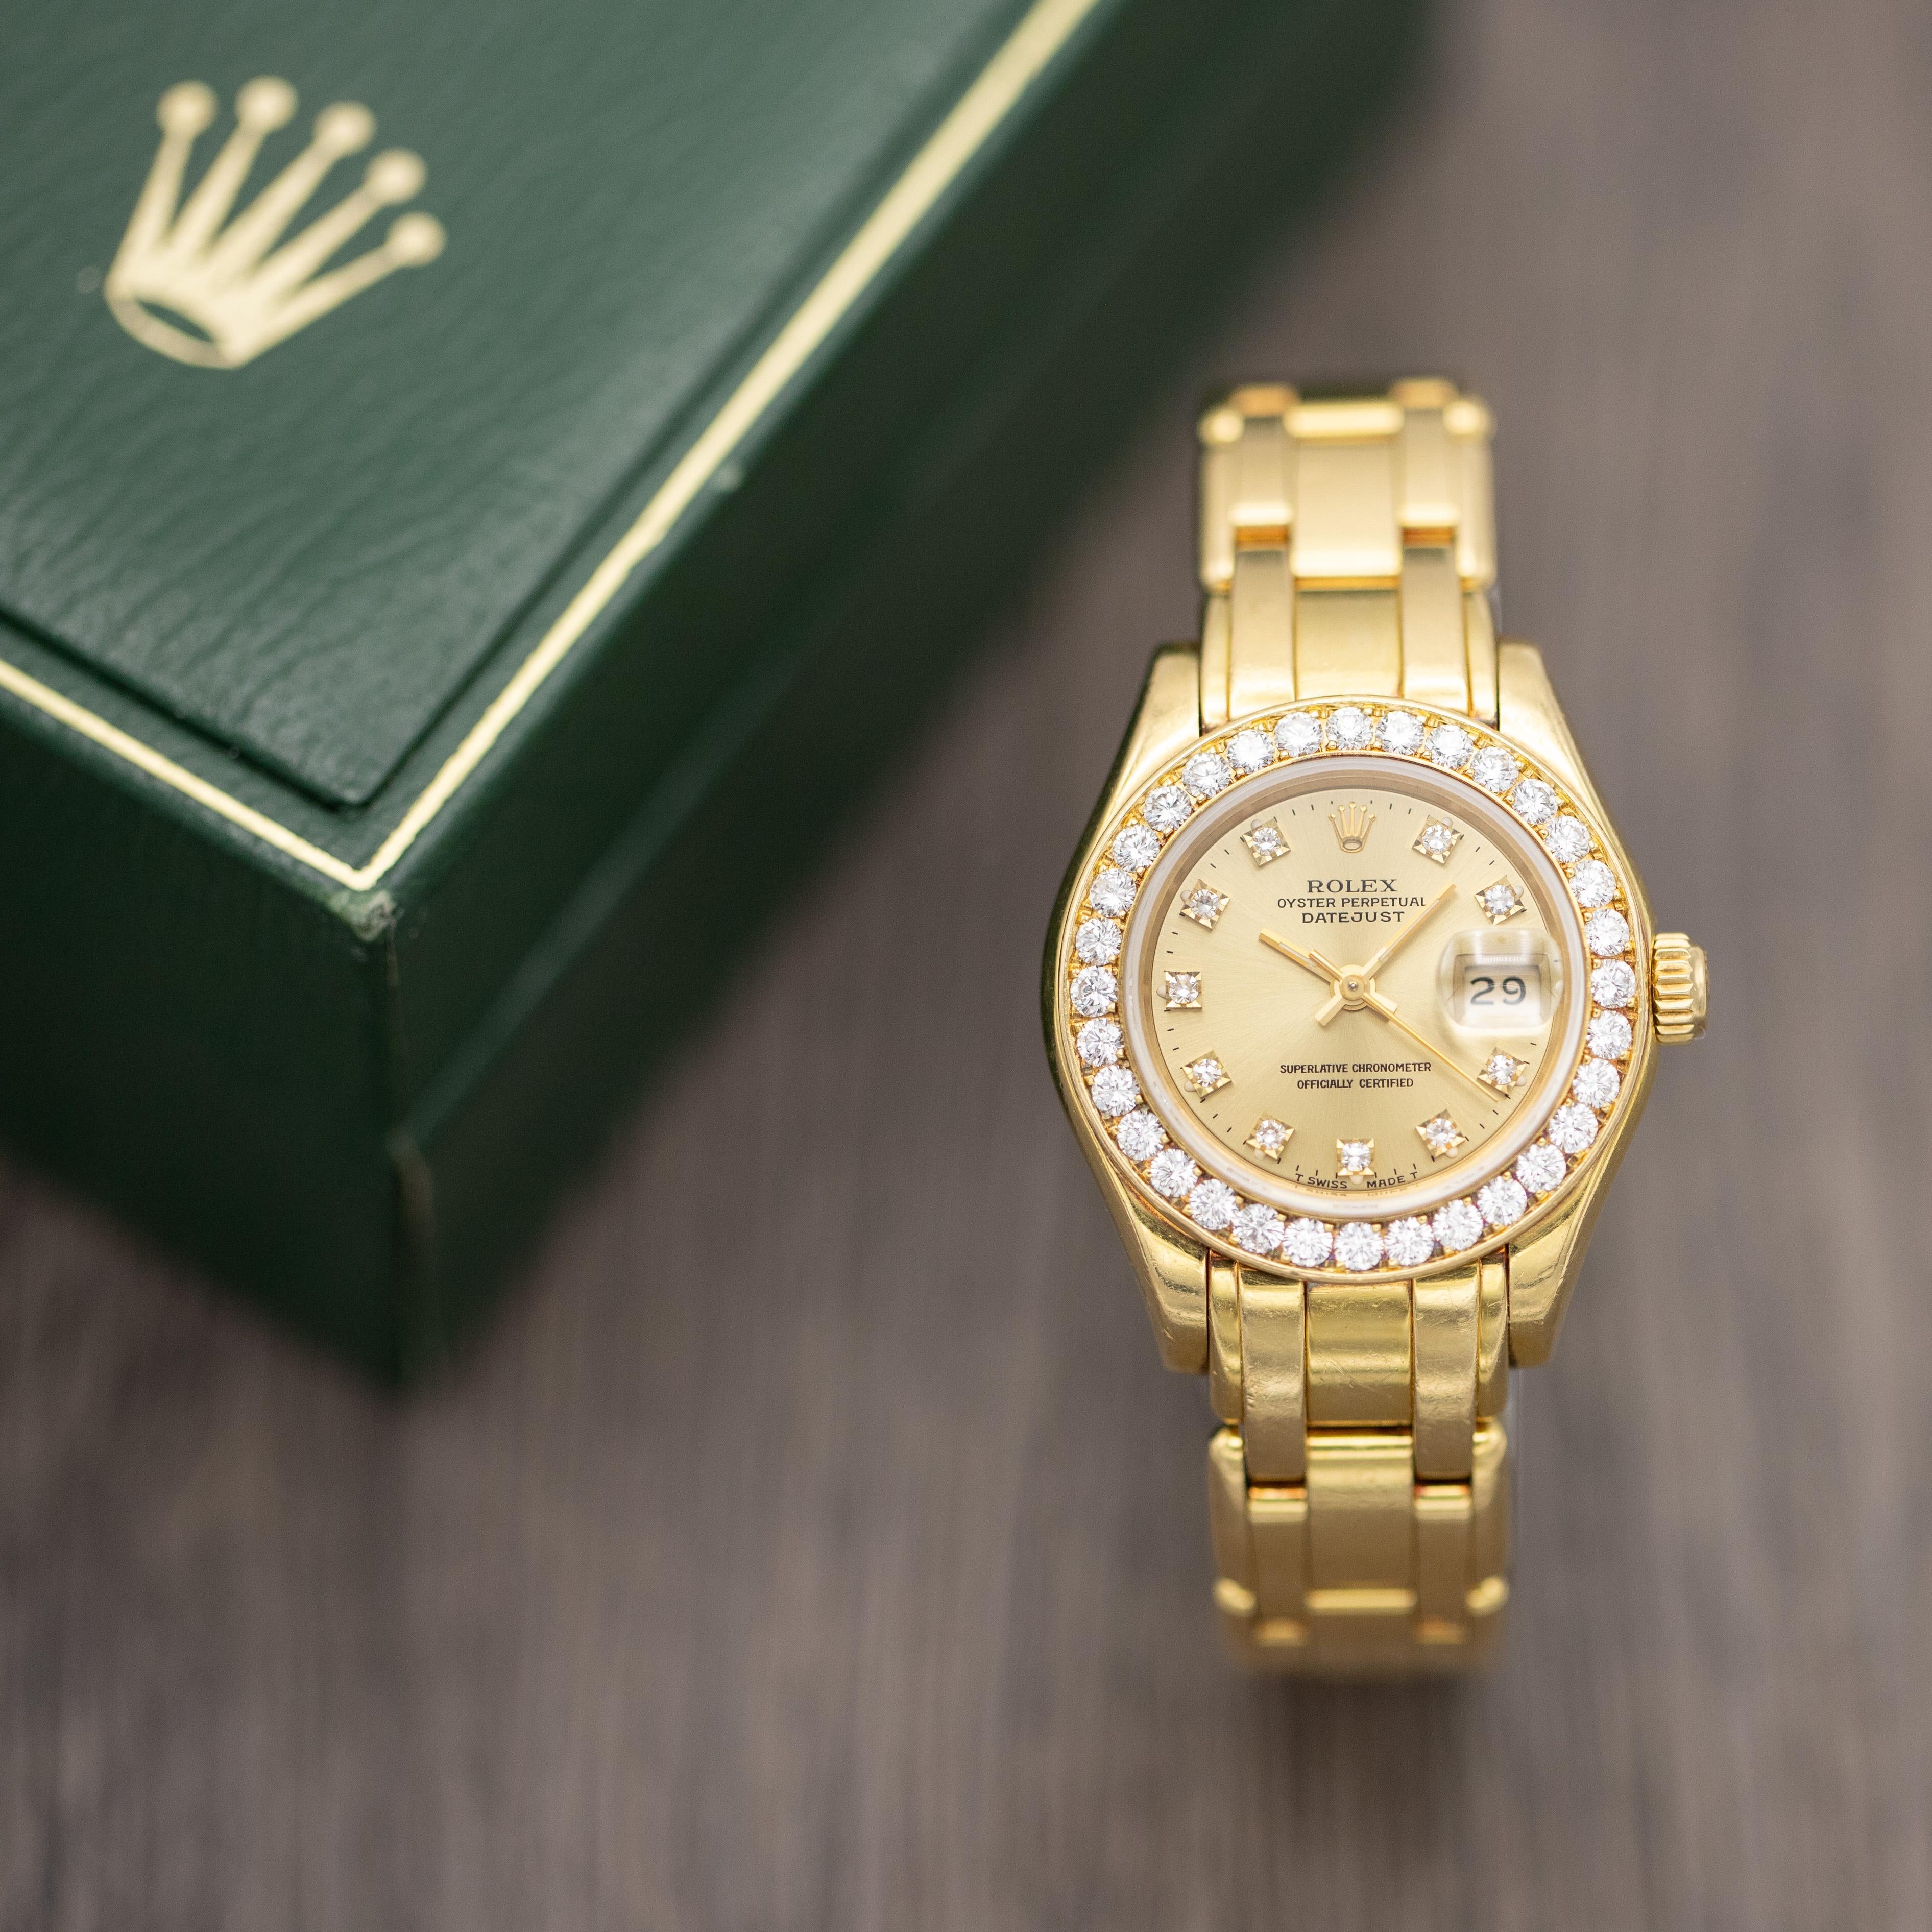 Nous vendons une Rolex Oyster Perpetual Lady Datejust Pearlmaster de fabrication suisse avec le numéro de référence 69298, datant de 1991 d'après son numéro de série. Comme le dit Rolex, il s'agit d'une réinterprétation féminine de l'emblématique